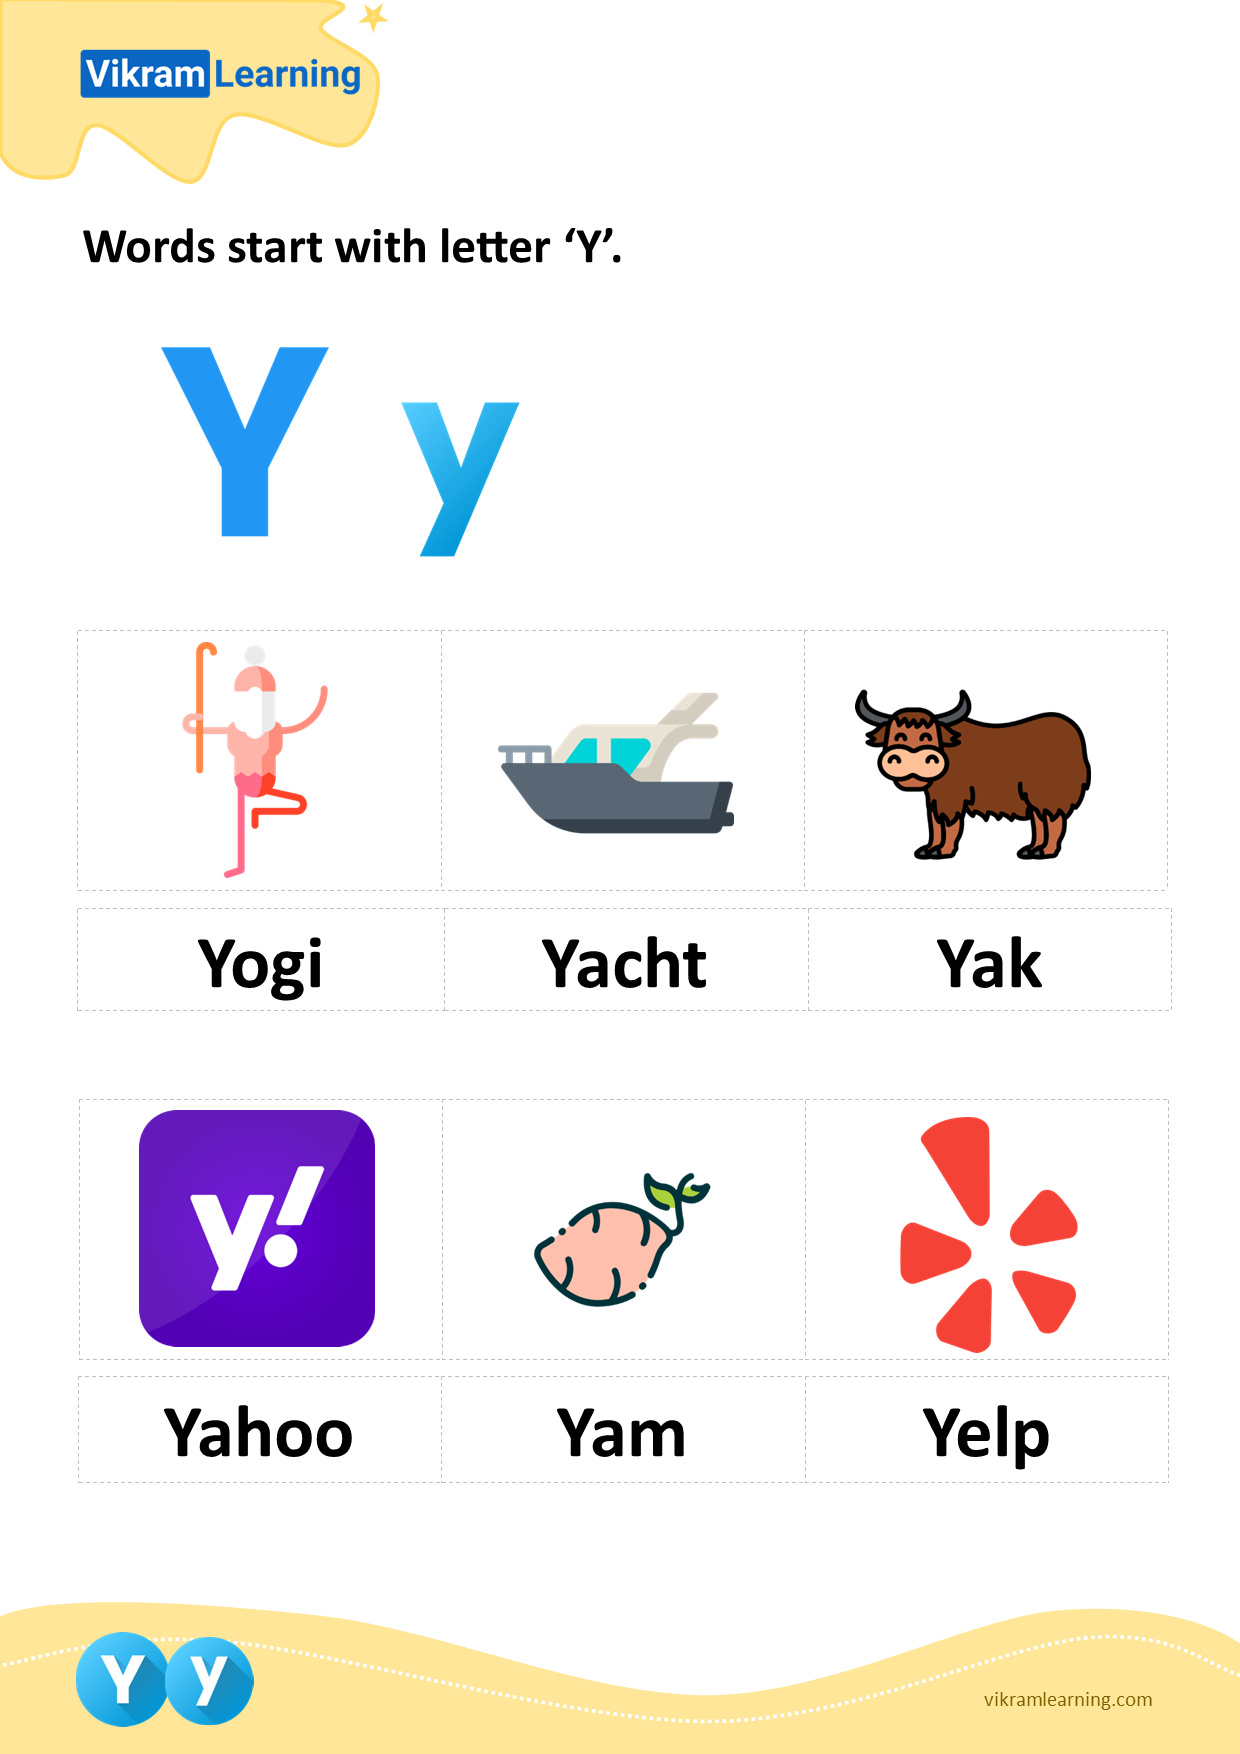 Download words start with letter 'y' worksheets | vikramlearning.com